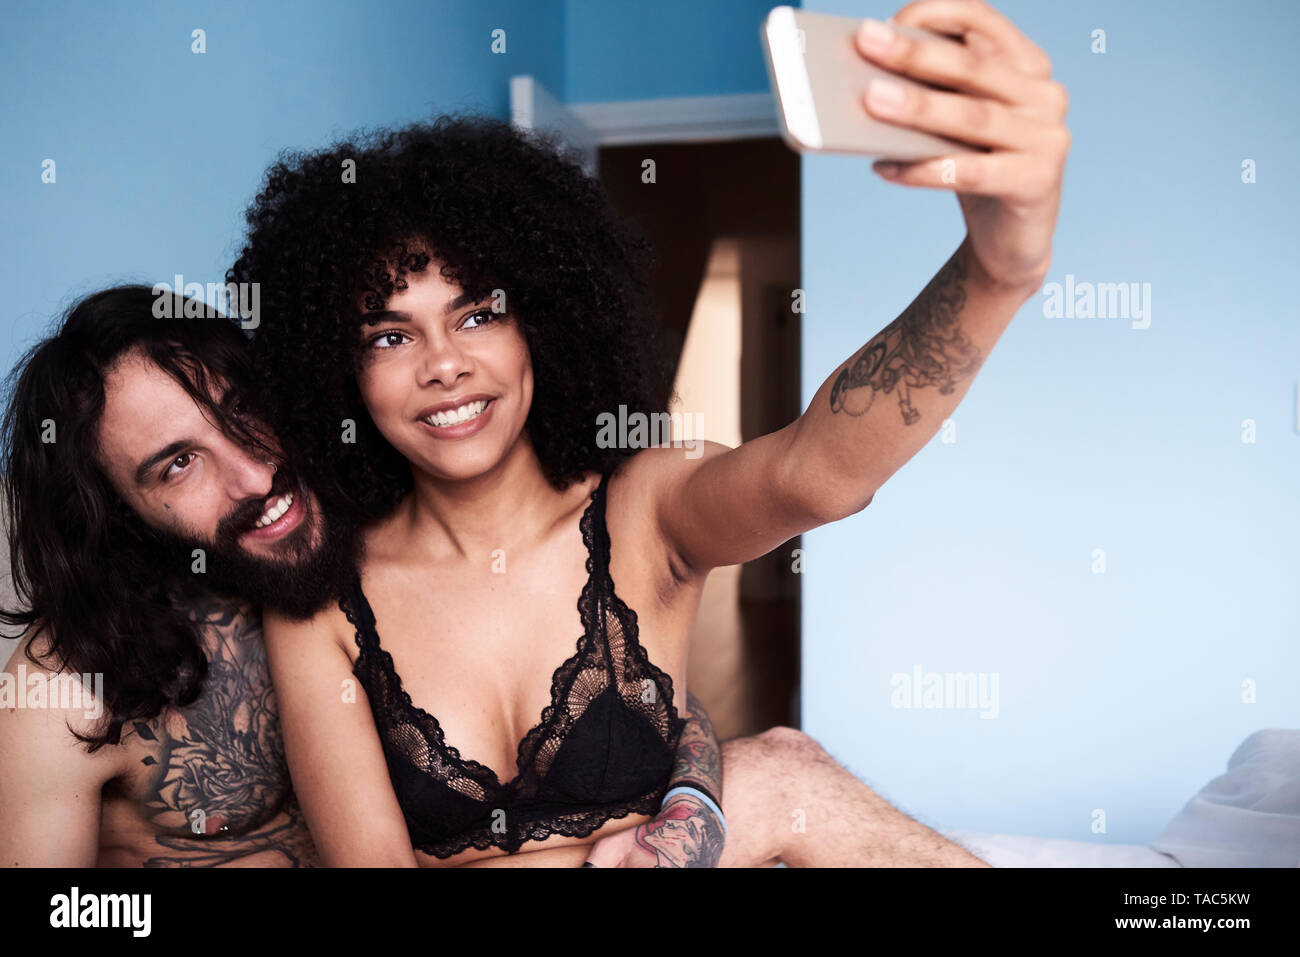 Happy young couple taking a lit en selfies Banque D'Images